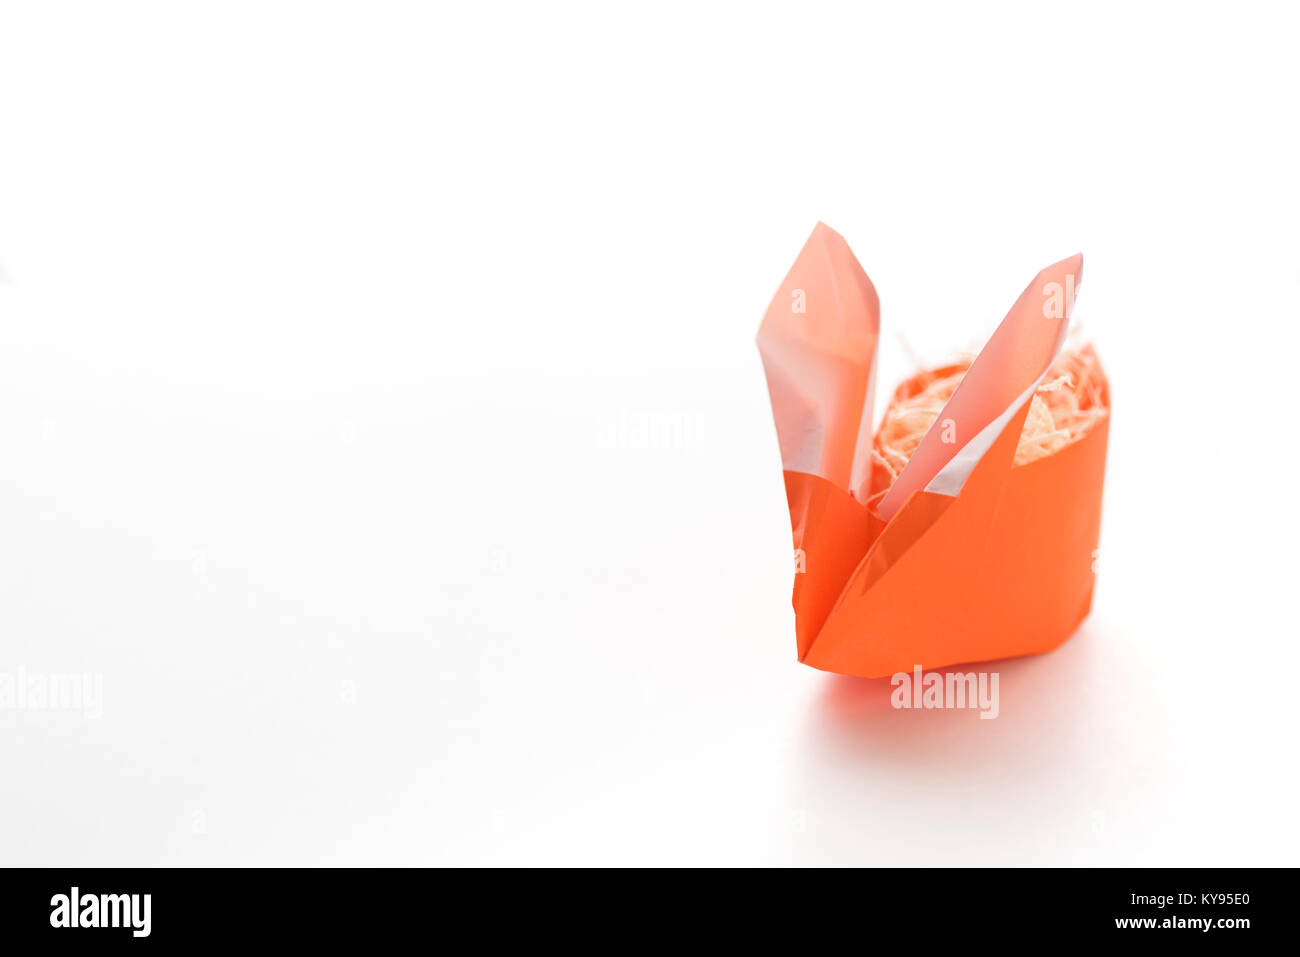 Uno colorato arancione origami Easter Bunny rabbit fatta di carta ripieni di paglia, pronto per l'uovo di pasqua, isolati su sfondo bianco Foto Stock